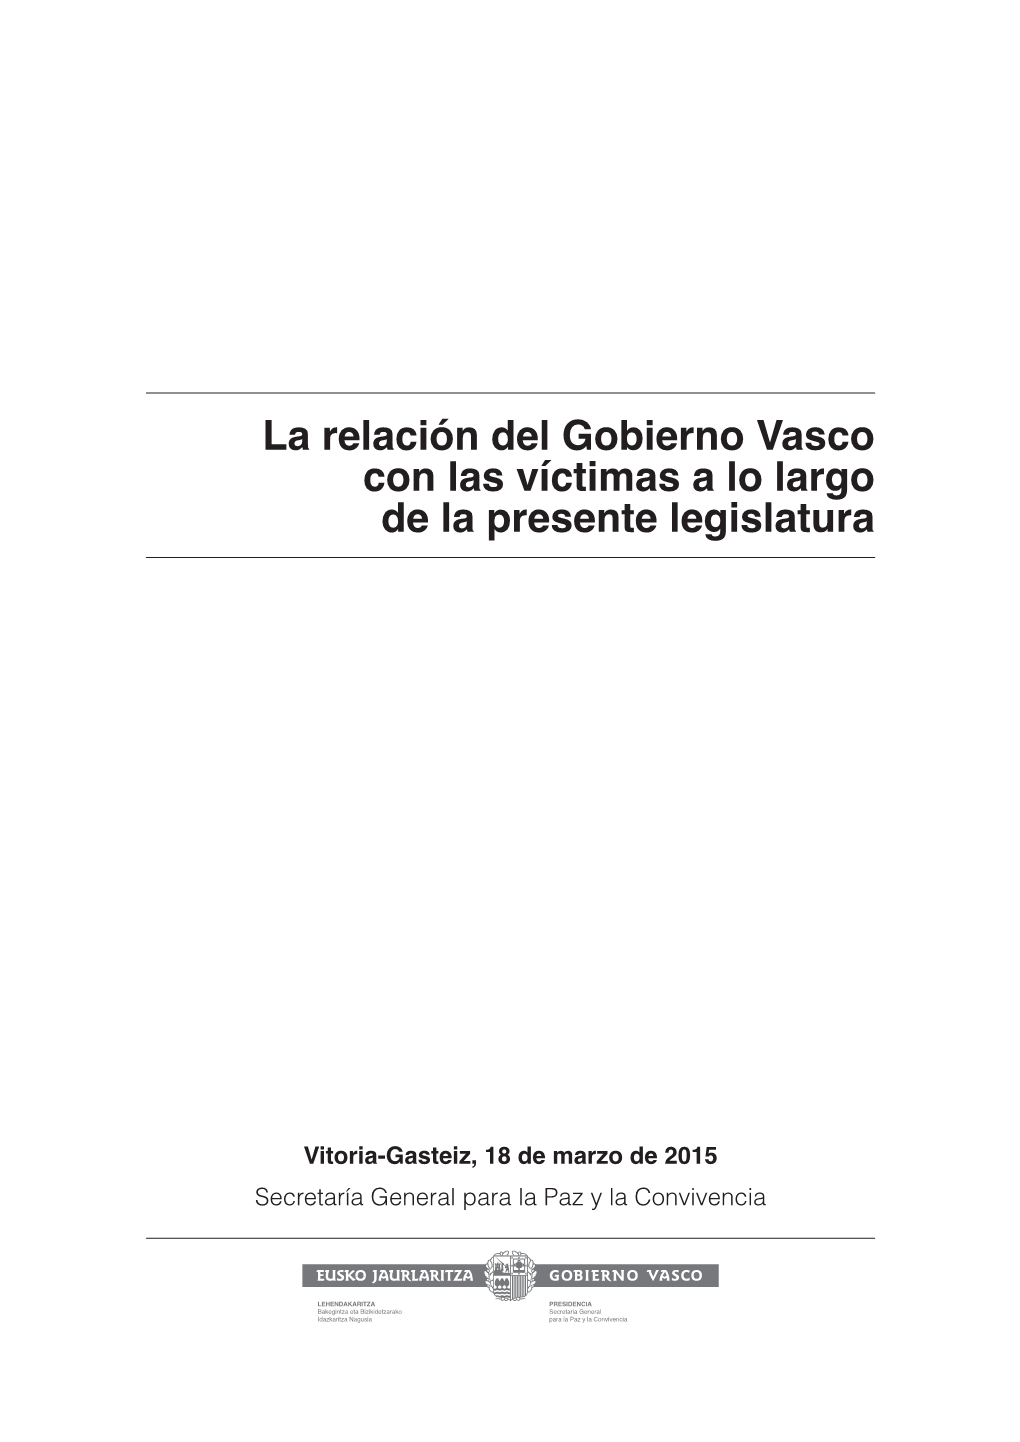 La Relación Del Gobierno Vasco Con Las Víctimas a Lo Largo De La Presente Legislatura